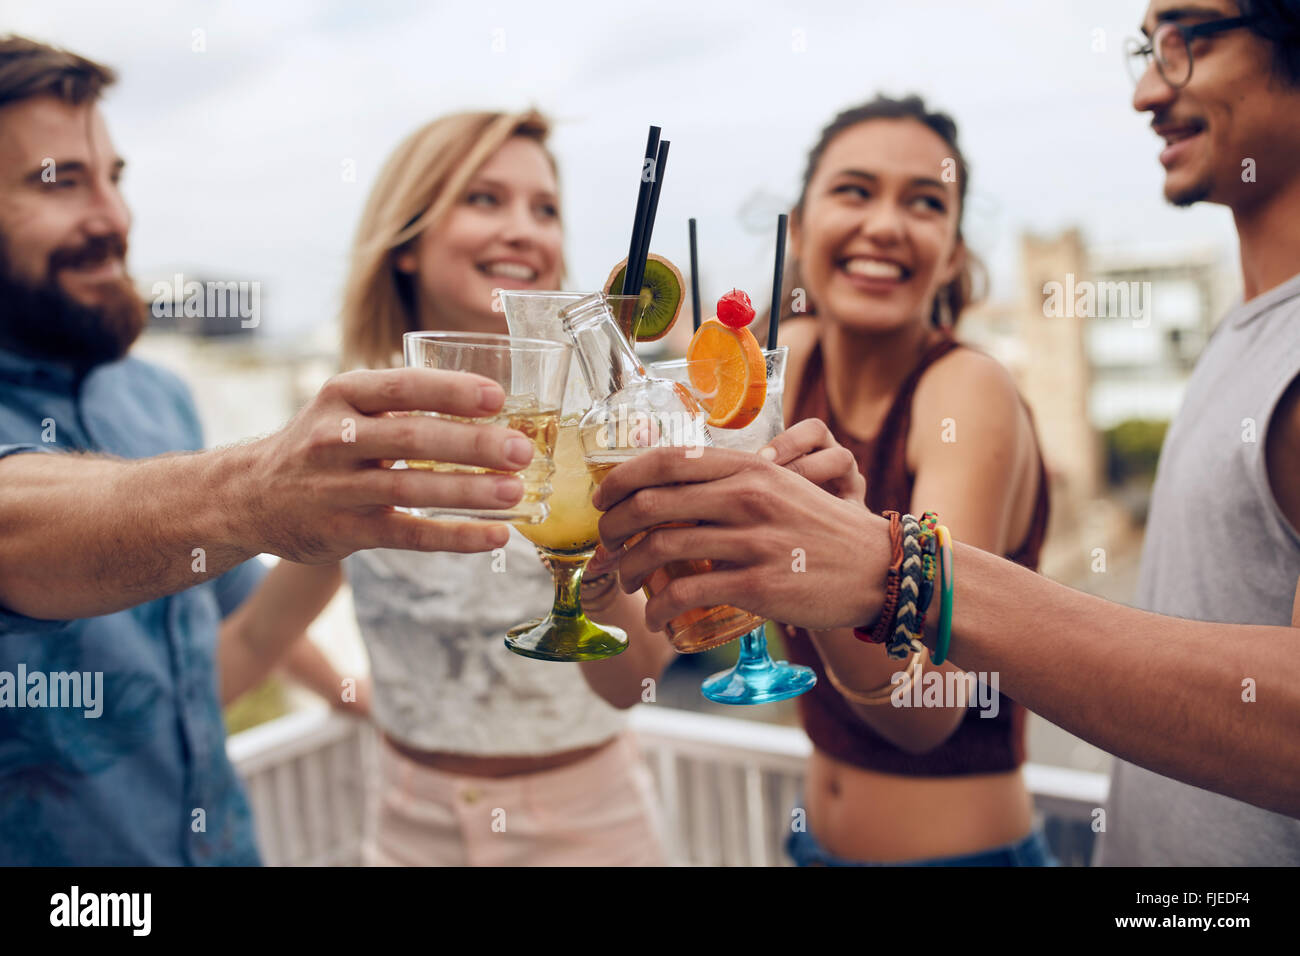 Freunde, Spaß und tranken Cocktails im Freien auf einem Dach zusammenkommen. Gruppe von Freunden rumhängen und Toasten trinkt ou Stockfoto